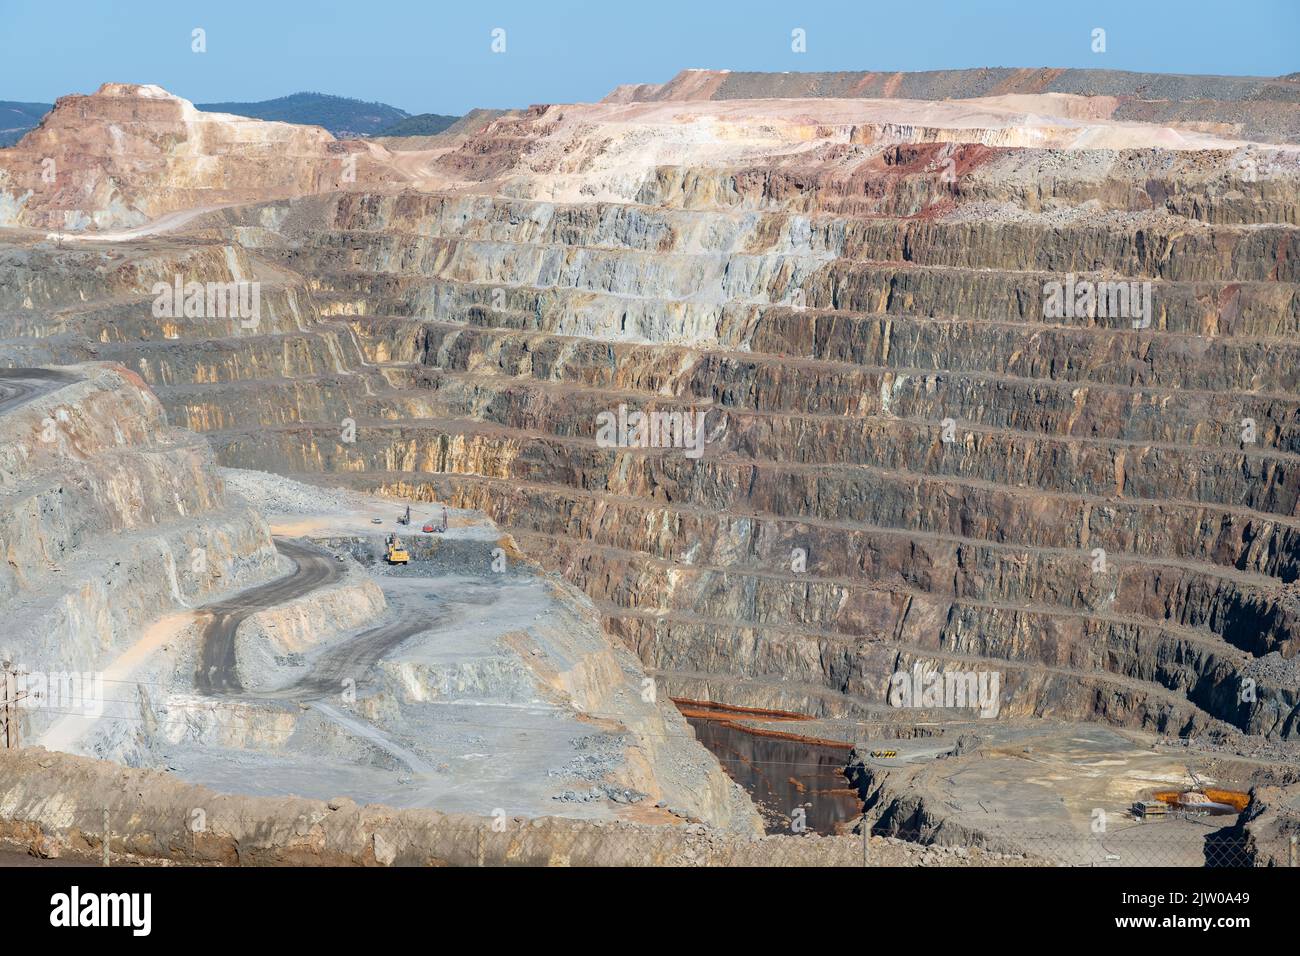 Riotinto mines in Huelva, open pit mining exploitation Stock Photo